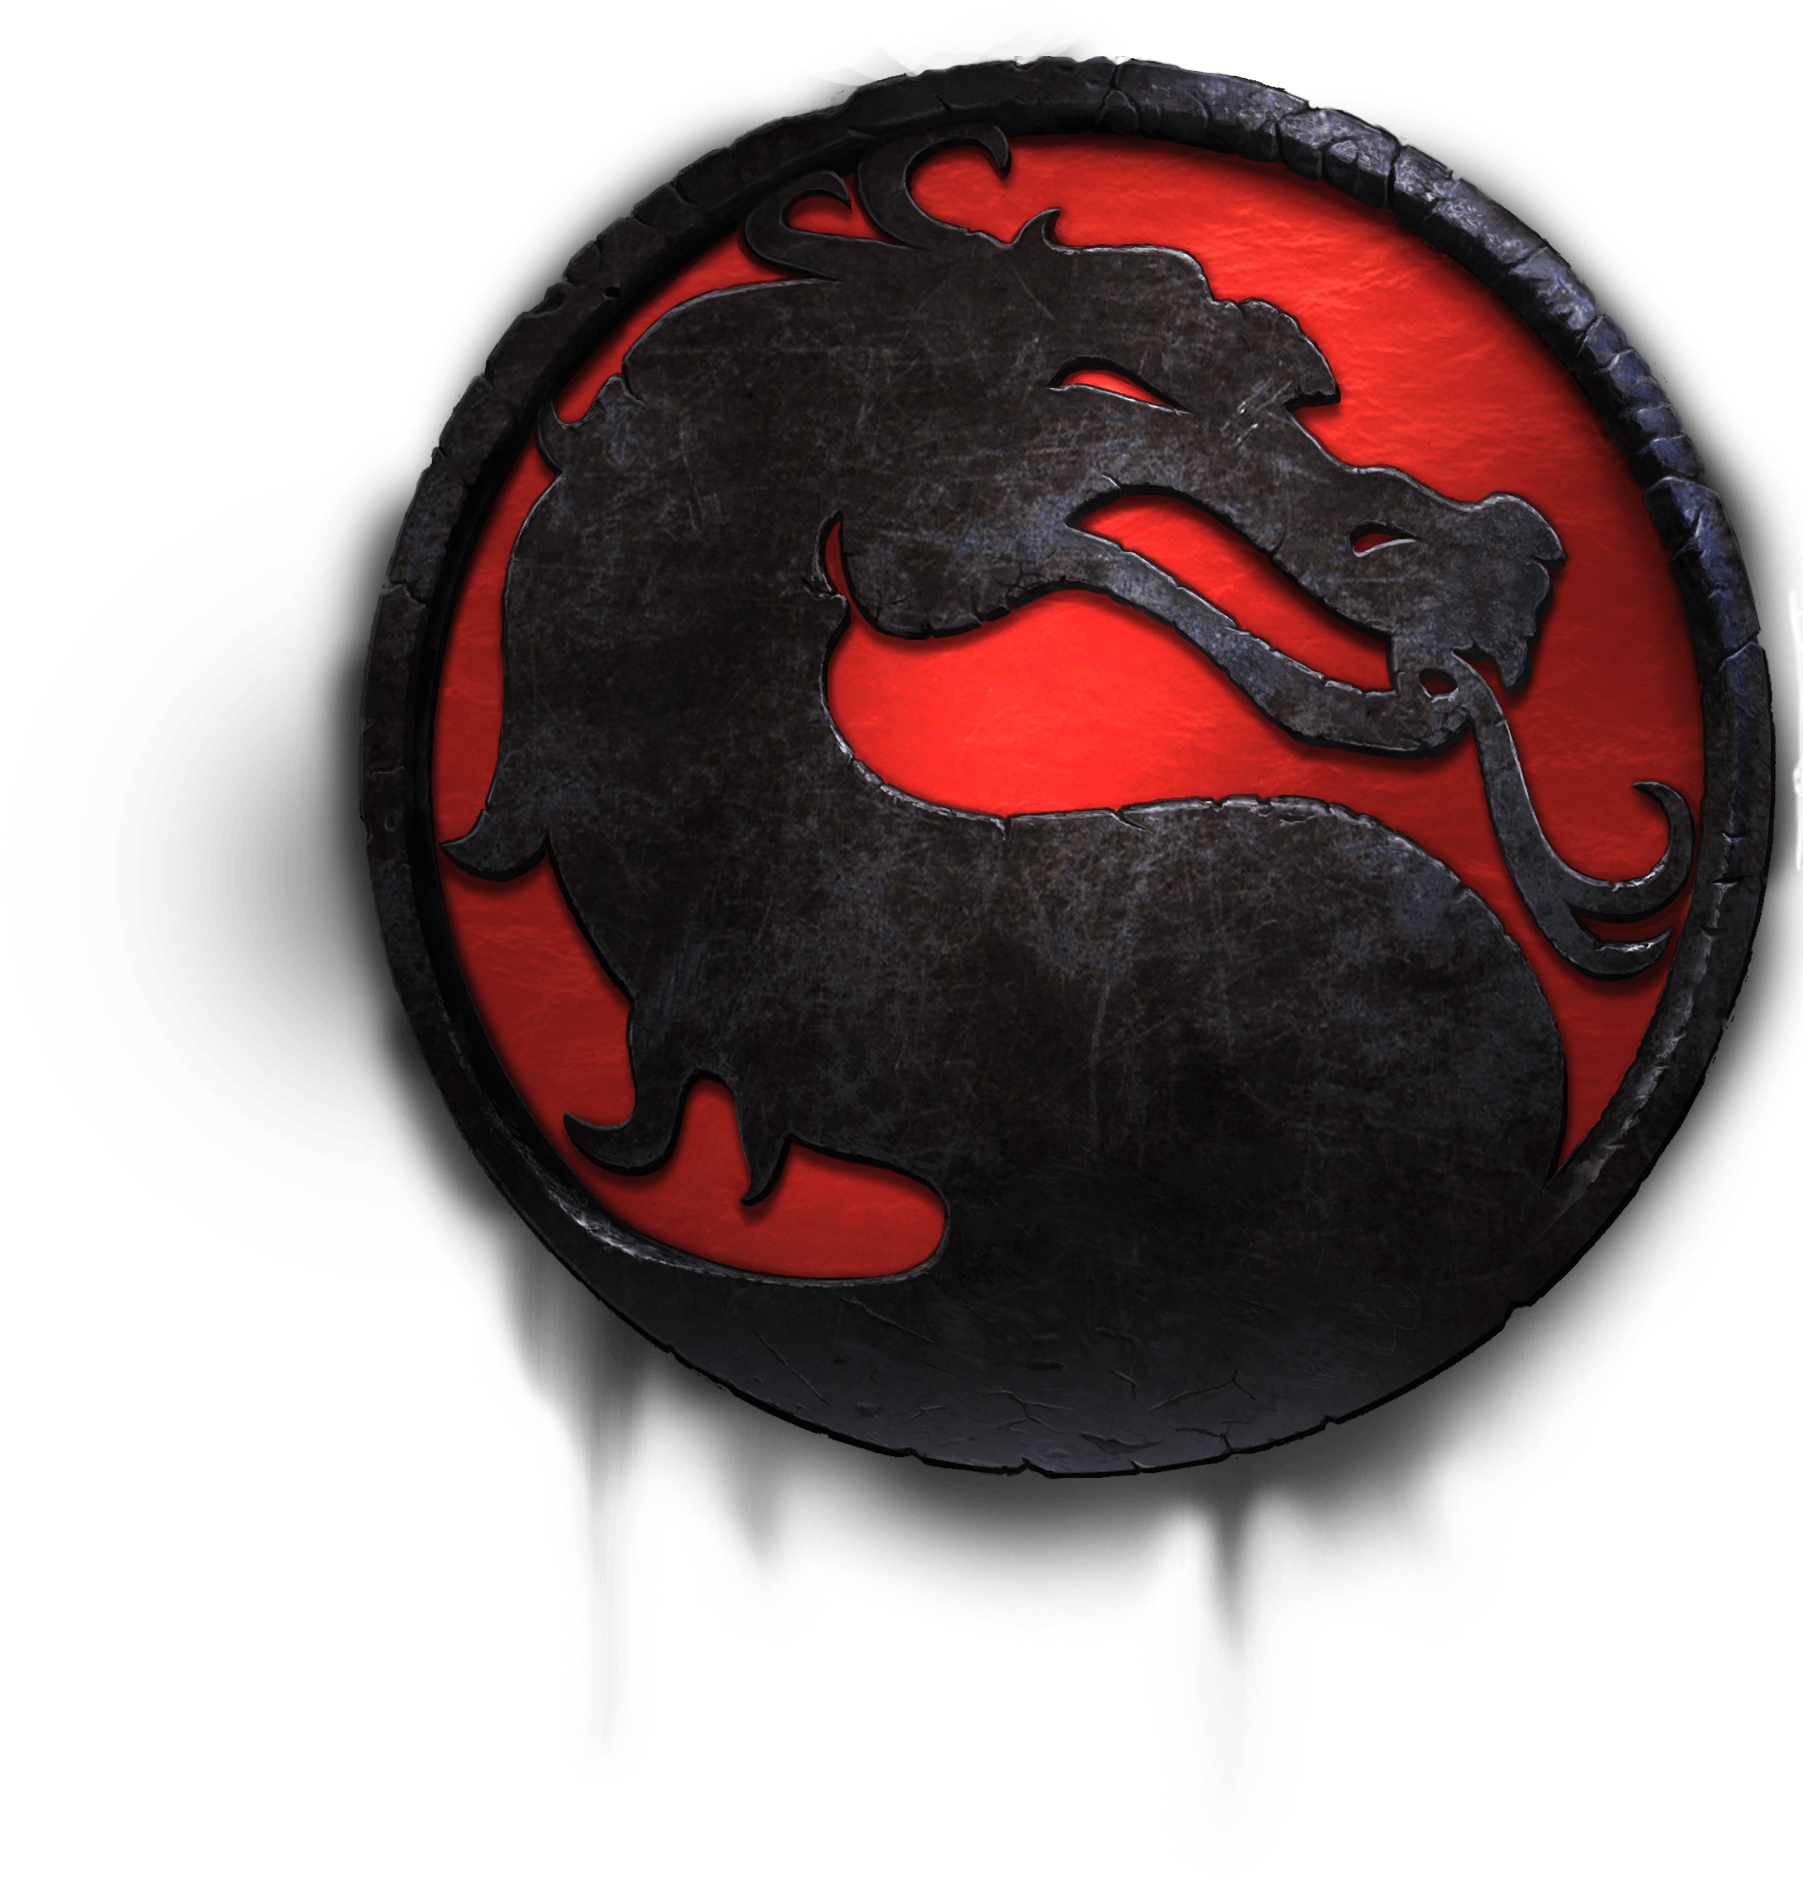 Mortal Kombat видеоигра PNG изображения фон